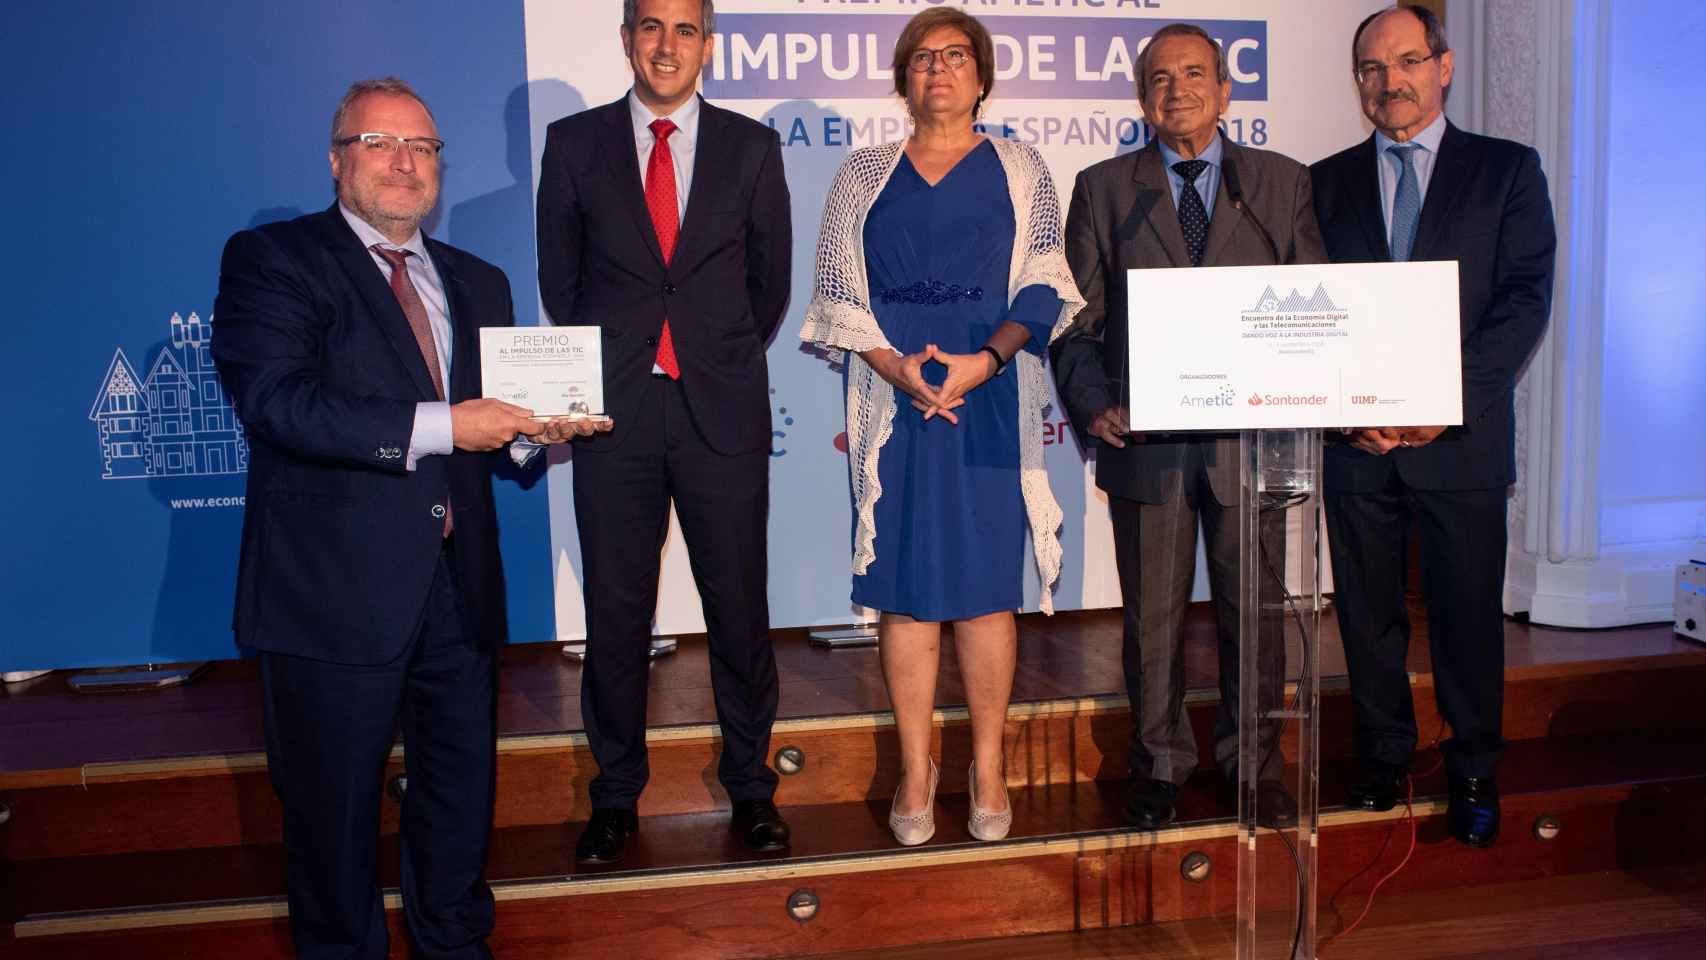 Fira de Barcelona gana el premio Ametic al impulso tecnológico a la empresa